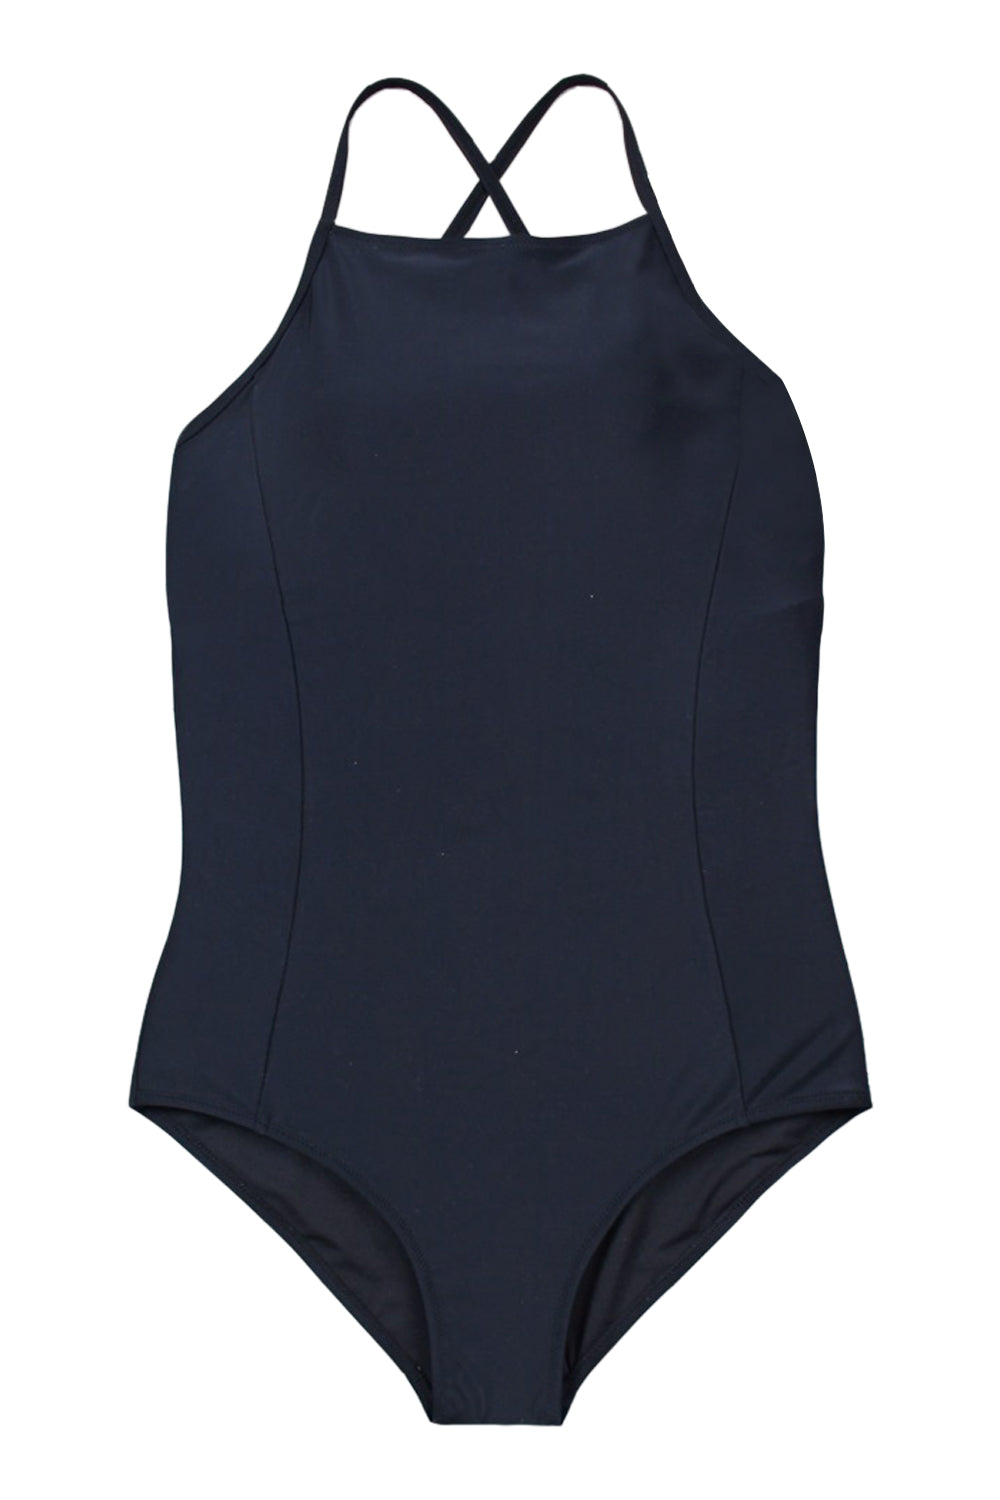 Iyasson Black Halter Tummy Control Swimwear